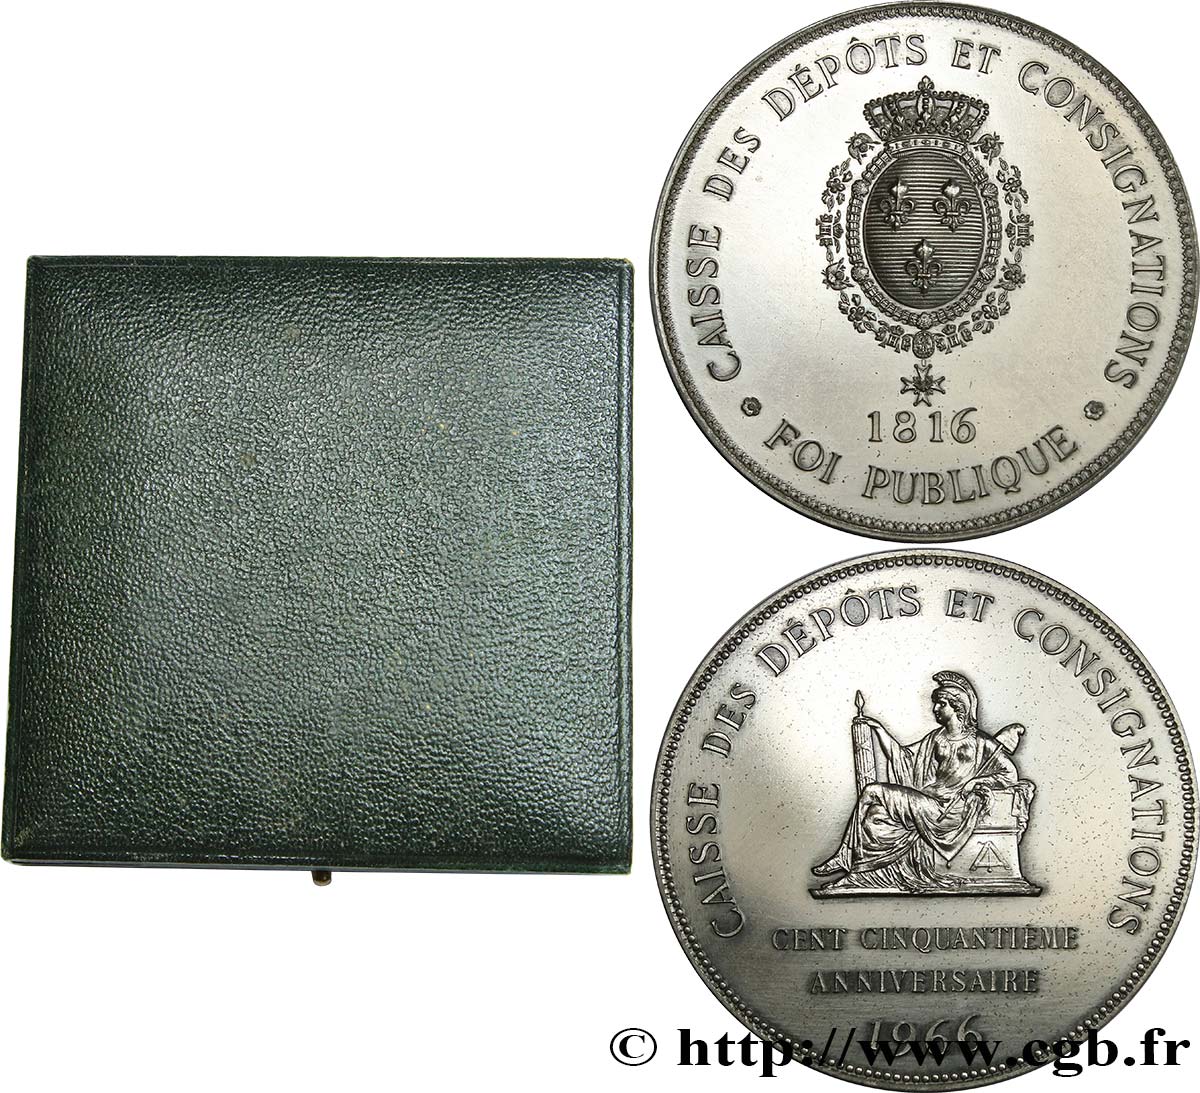 BANKS - CRÉDIT INSTITUTIONS Médaille, 150e anniversaire de la Caisse des Dépôts et consignations AU